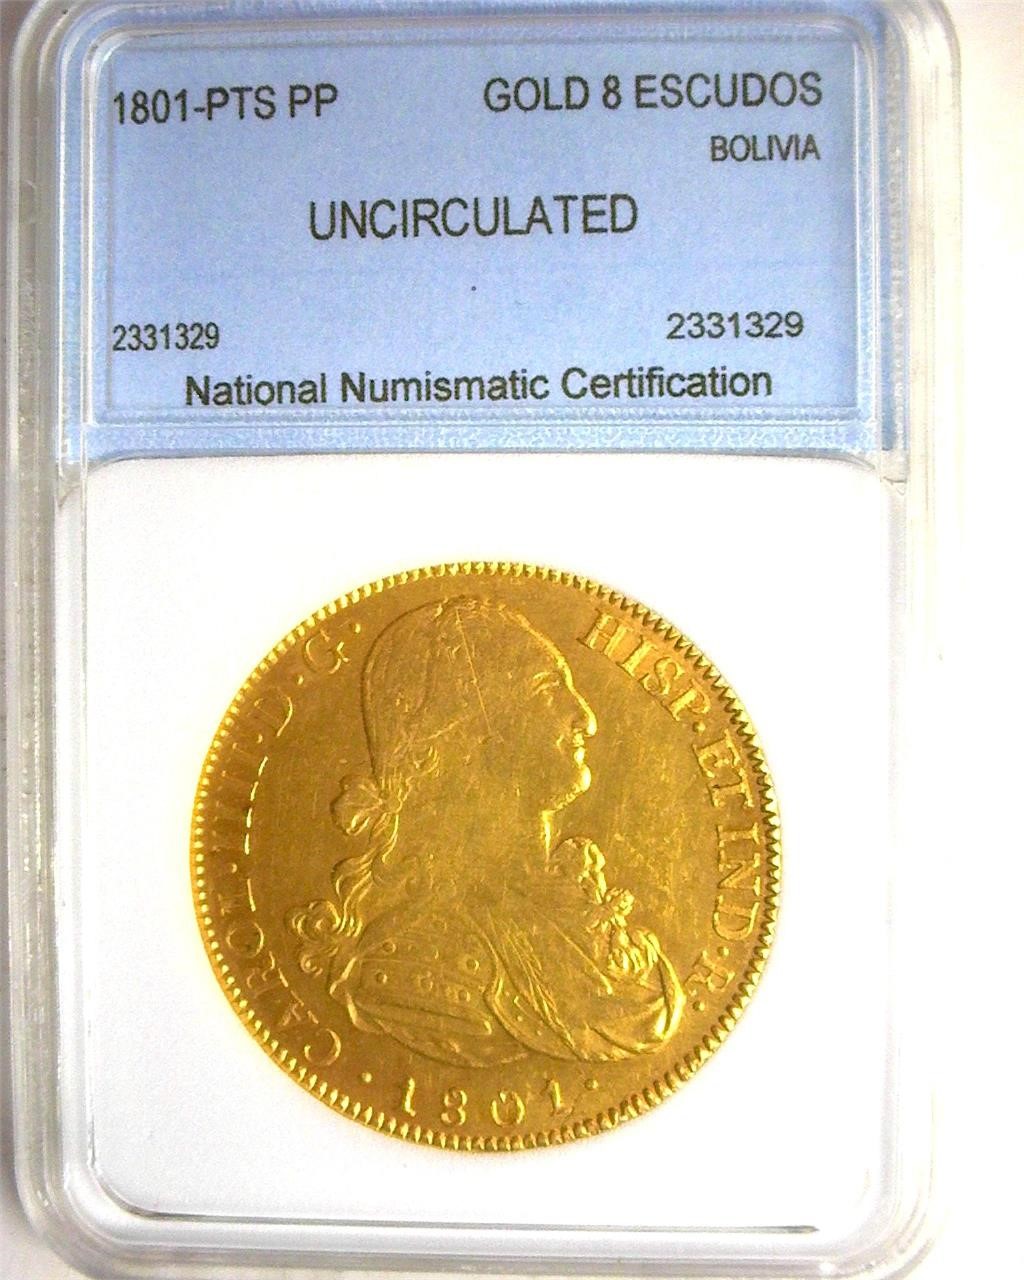 1801-PTS PP Gold 8 Escudos NNC UNC Bolivia